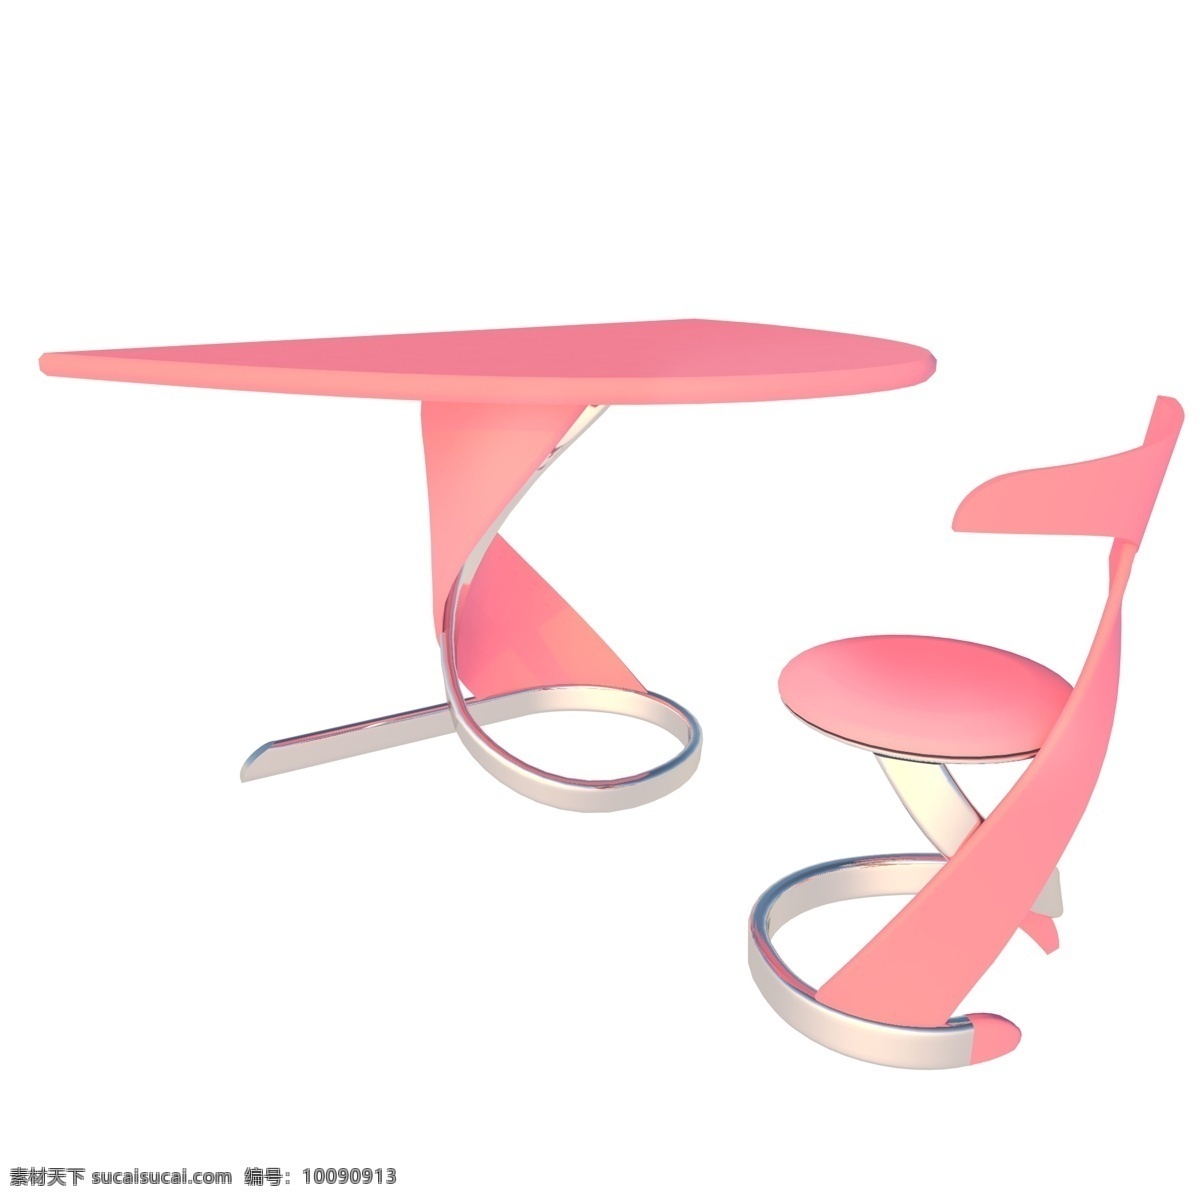 创意 粉色 桌子 椅子